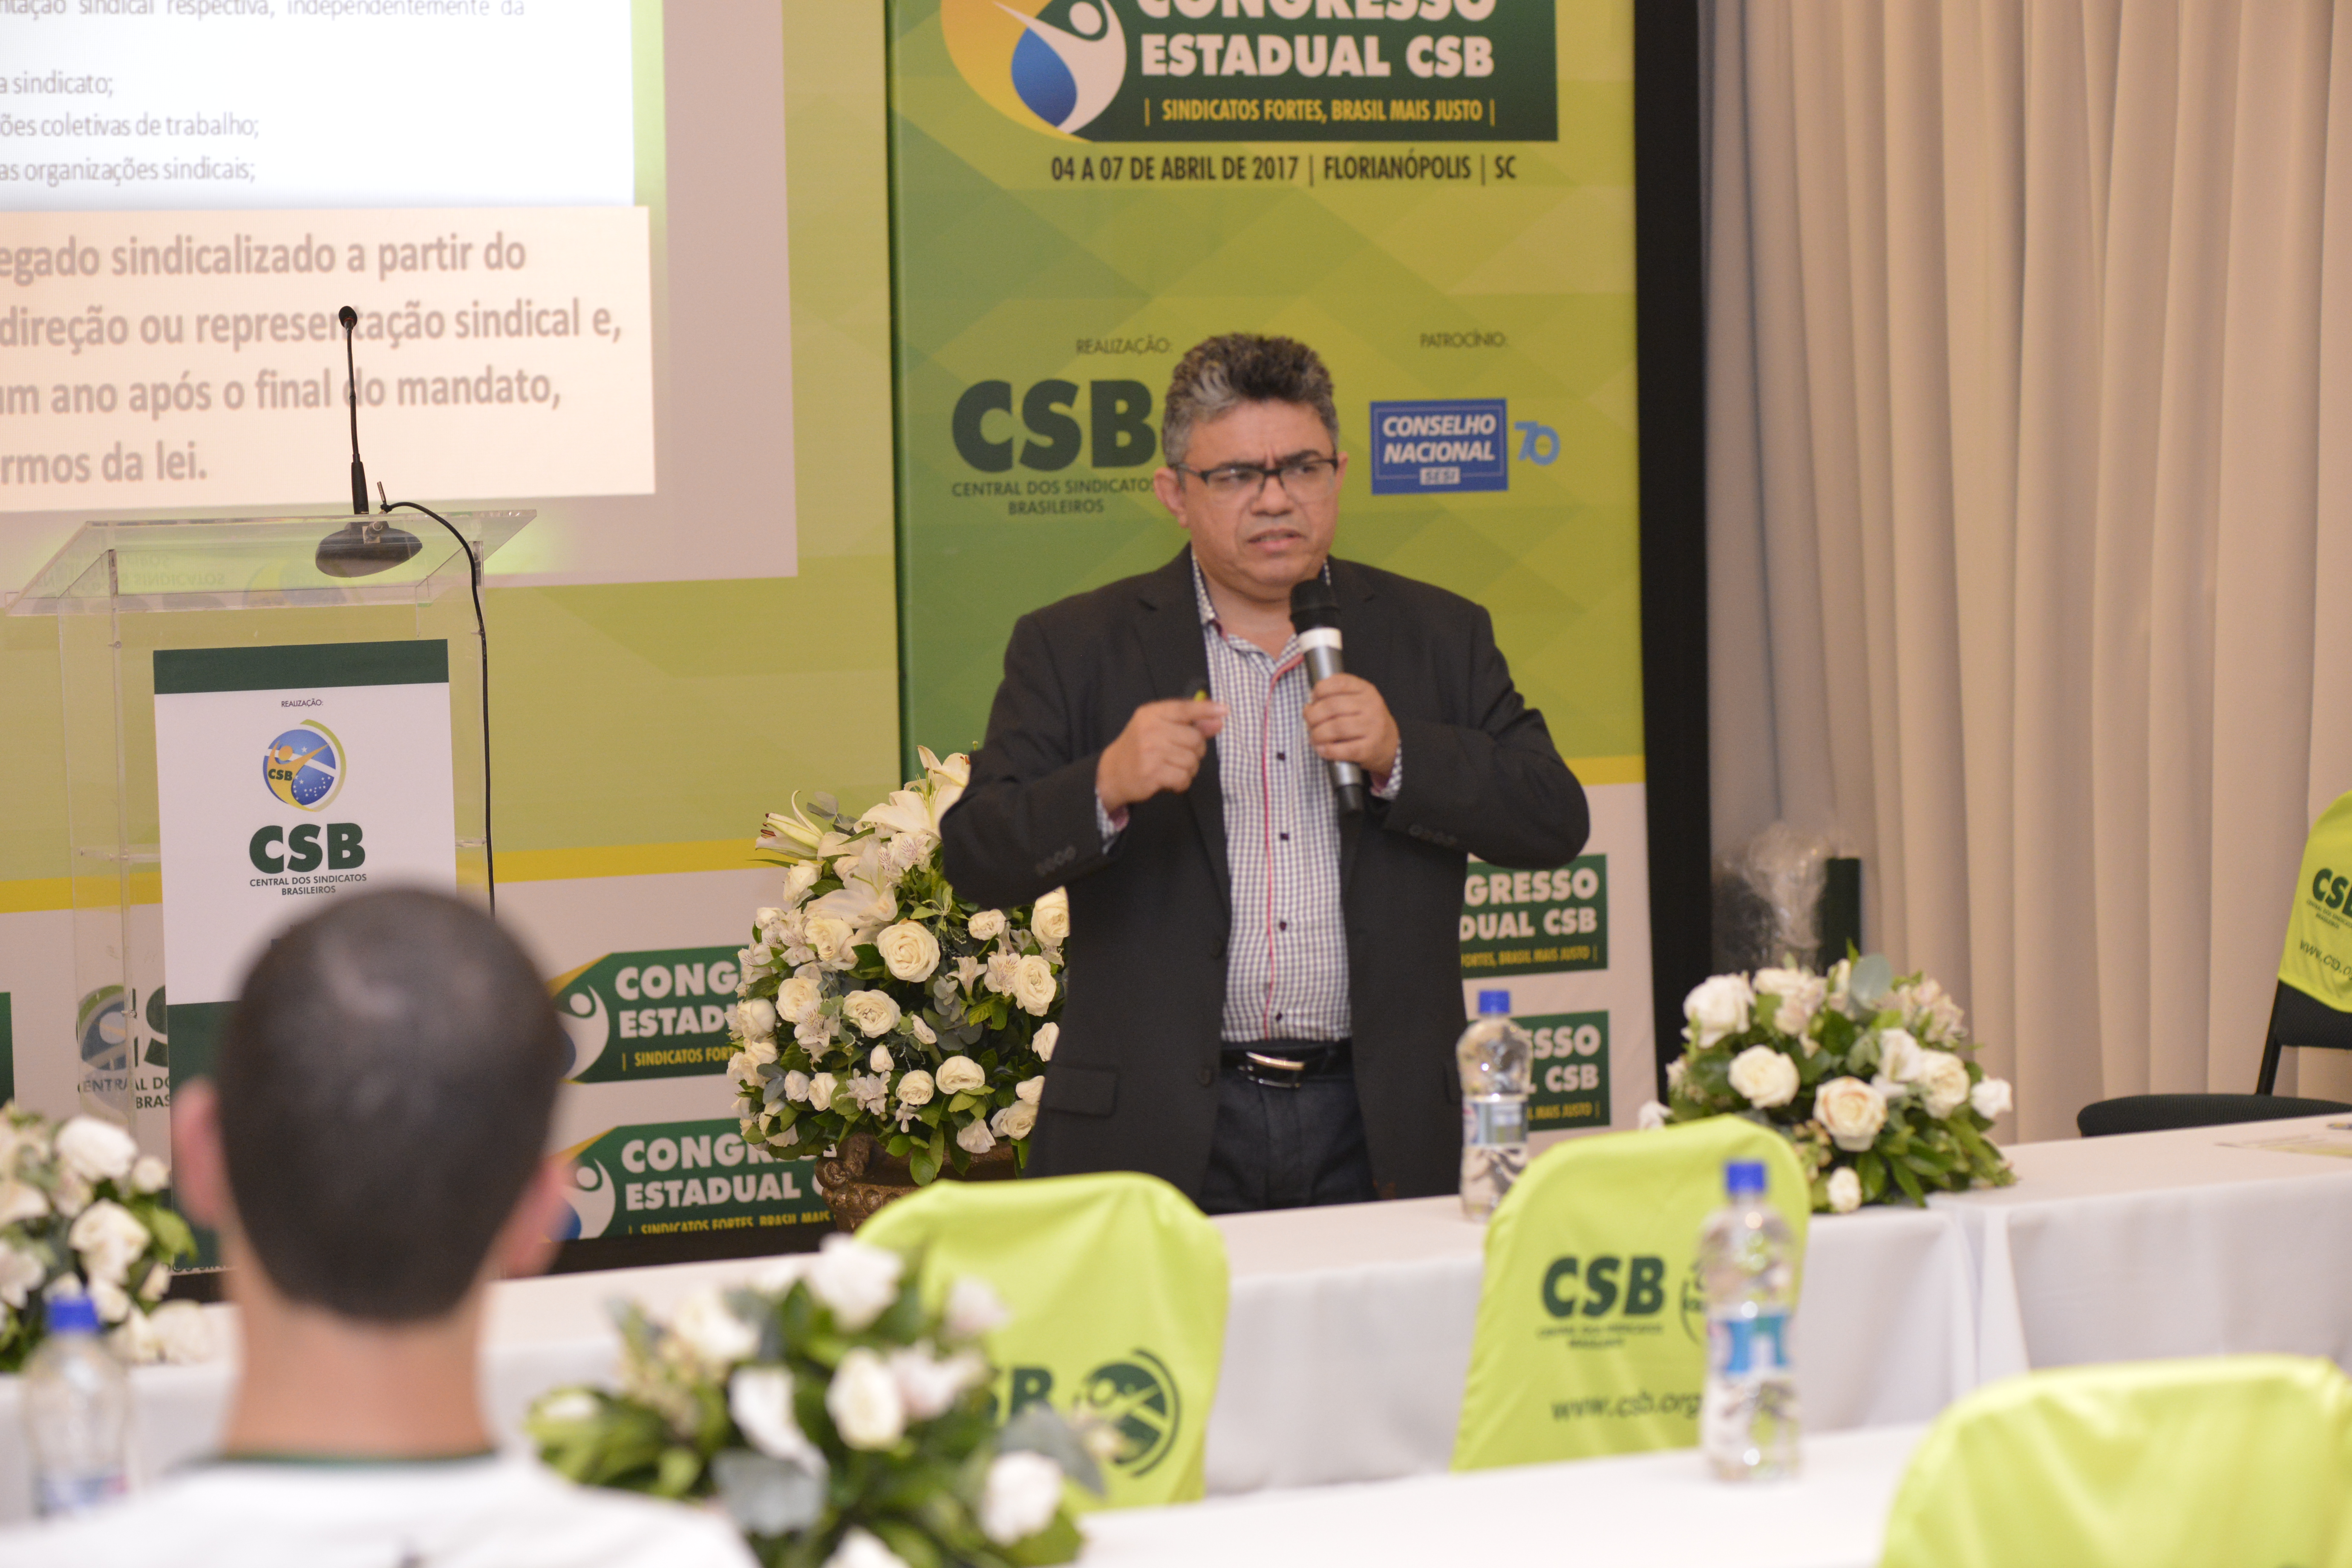 Discussão sobre proteção do dirigente sindical encerra Congresso Estadual da CSB Santa Catarina